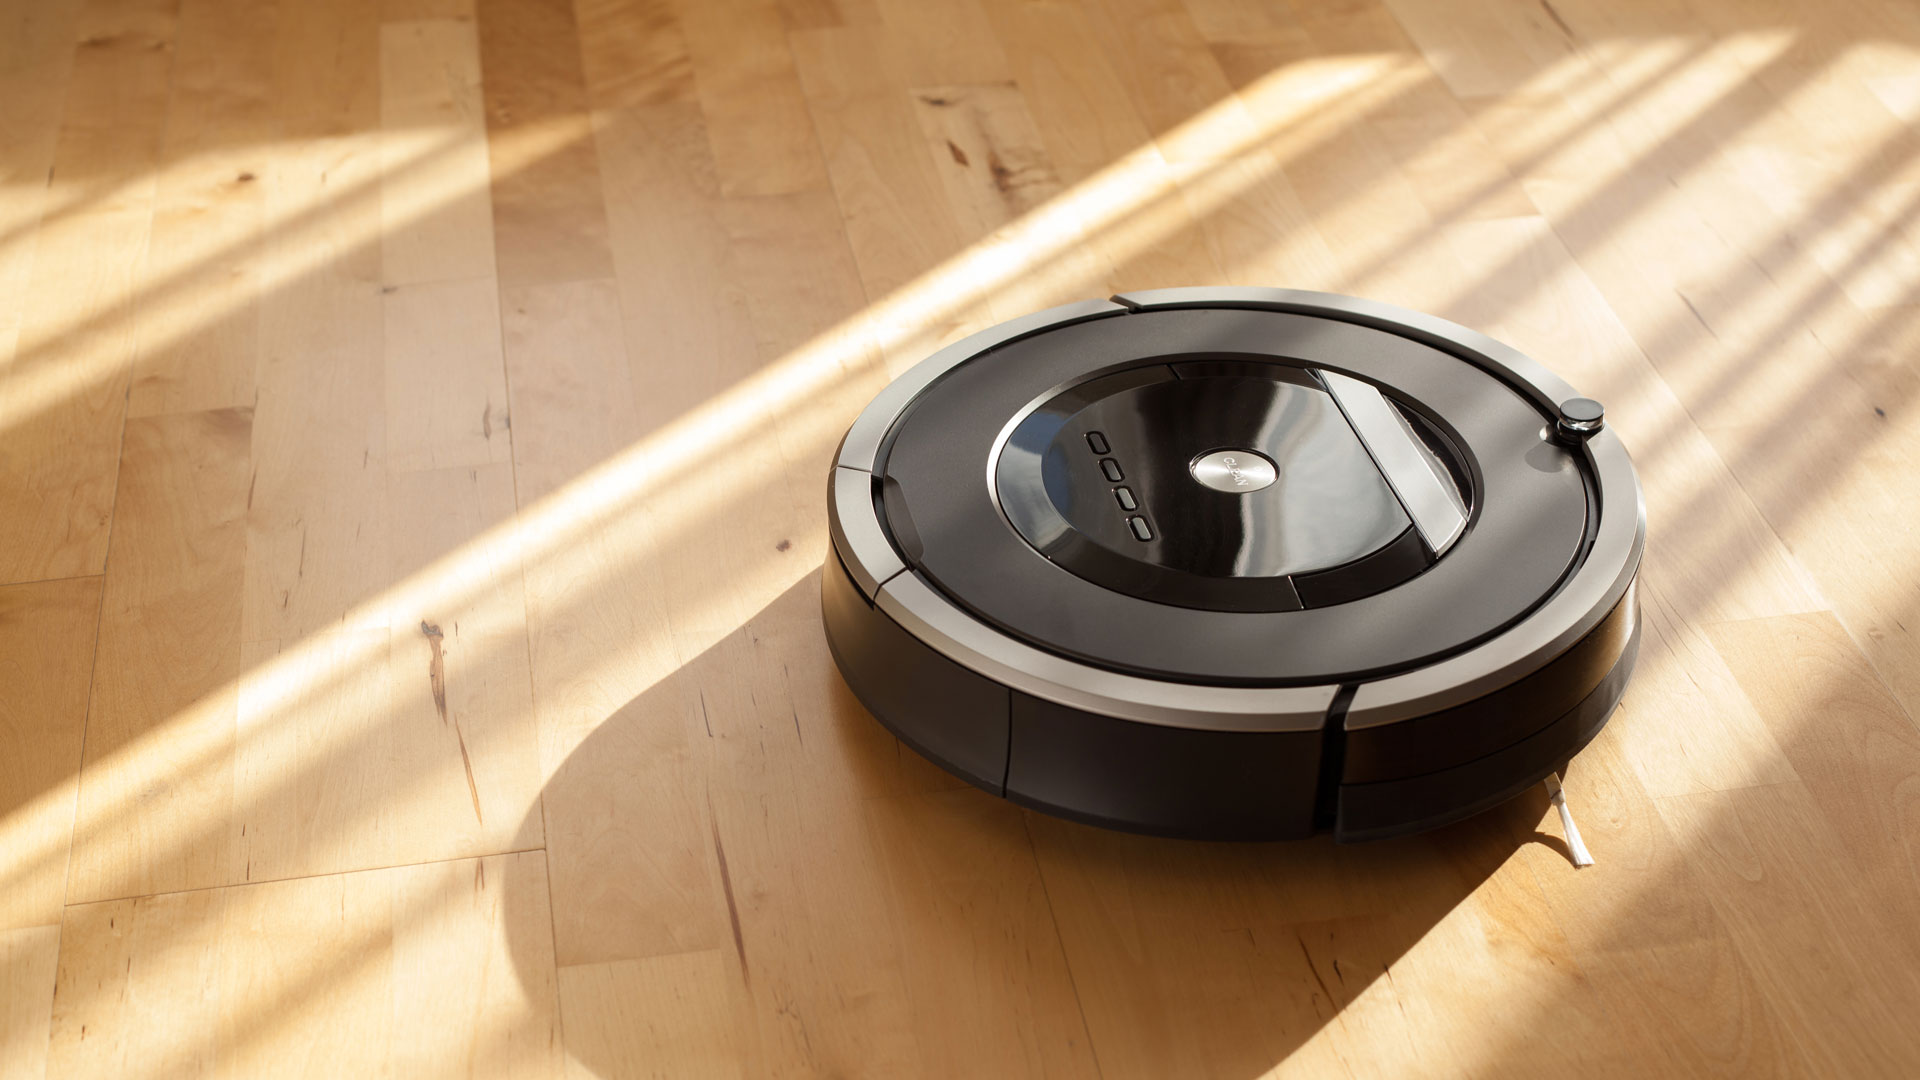 Best Robot Vacuums 2021 Top Ten Reviews, Best Robot Hardwood Floor Cleaner